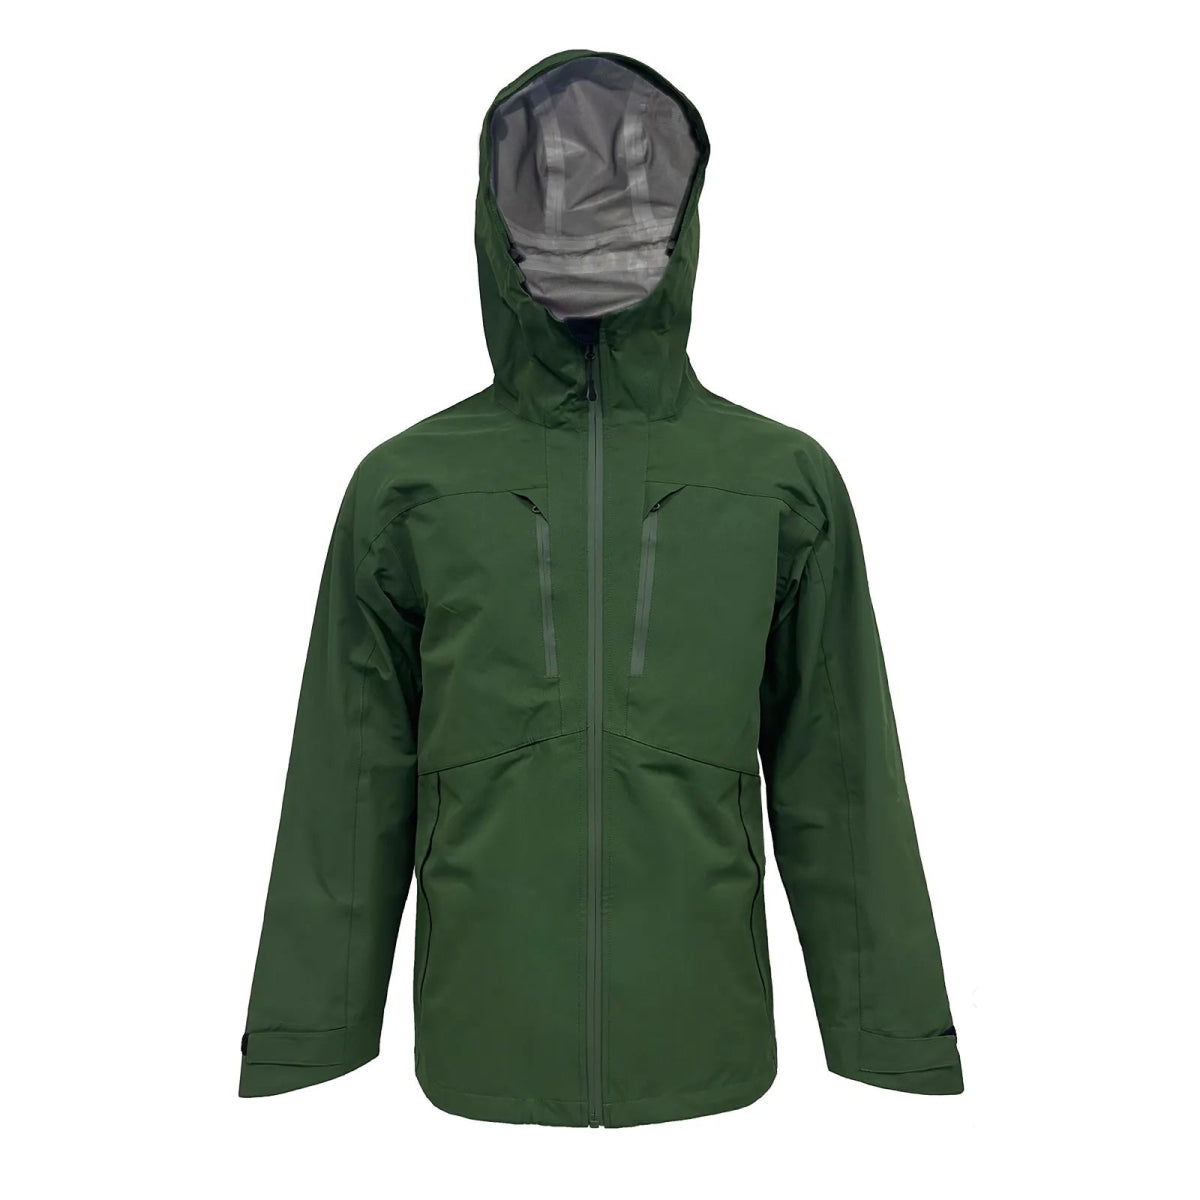 Veste de randonnée imperméable à 3 couches avec capuche pour homme "LKVER - DWR Jacket" - Vert foncé / S | Planète Rando